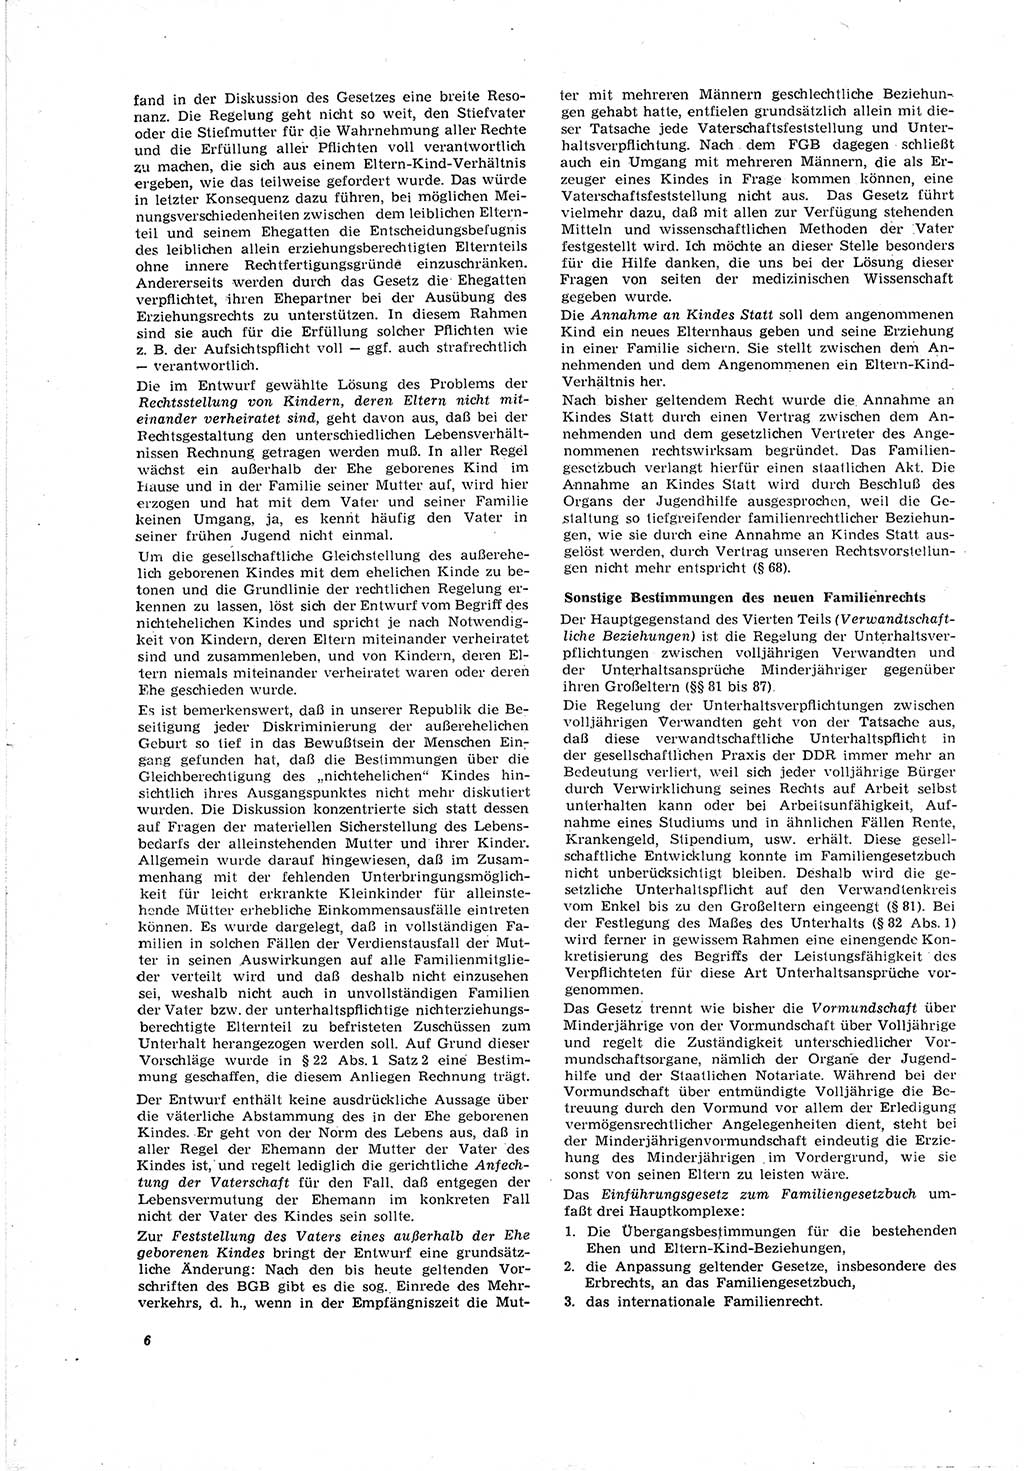 Neue Justiz (NJ), Zeitschrift für Recht und Rechtswissenschaft [Deutsche Demokratische Republik (DDR)], 20. Jahrgang 1966, Seite 6 (NJ DDR 1966, S. 6)